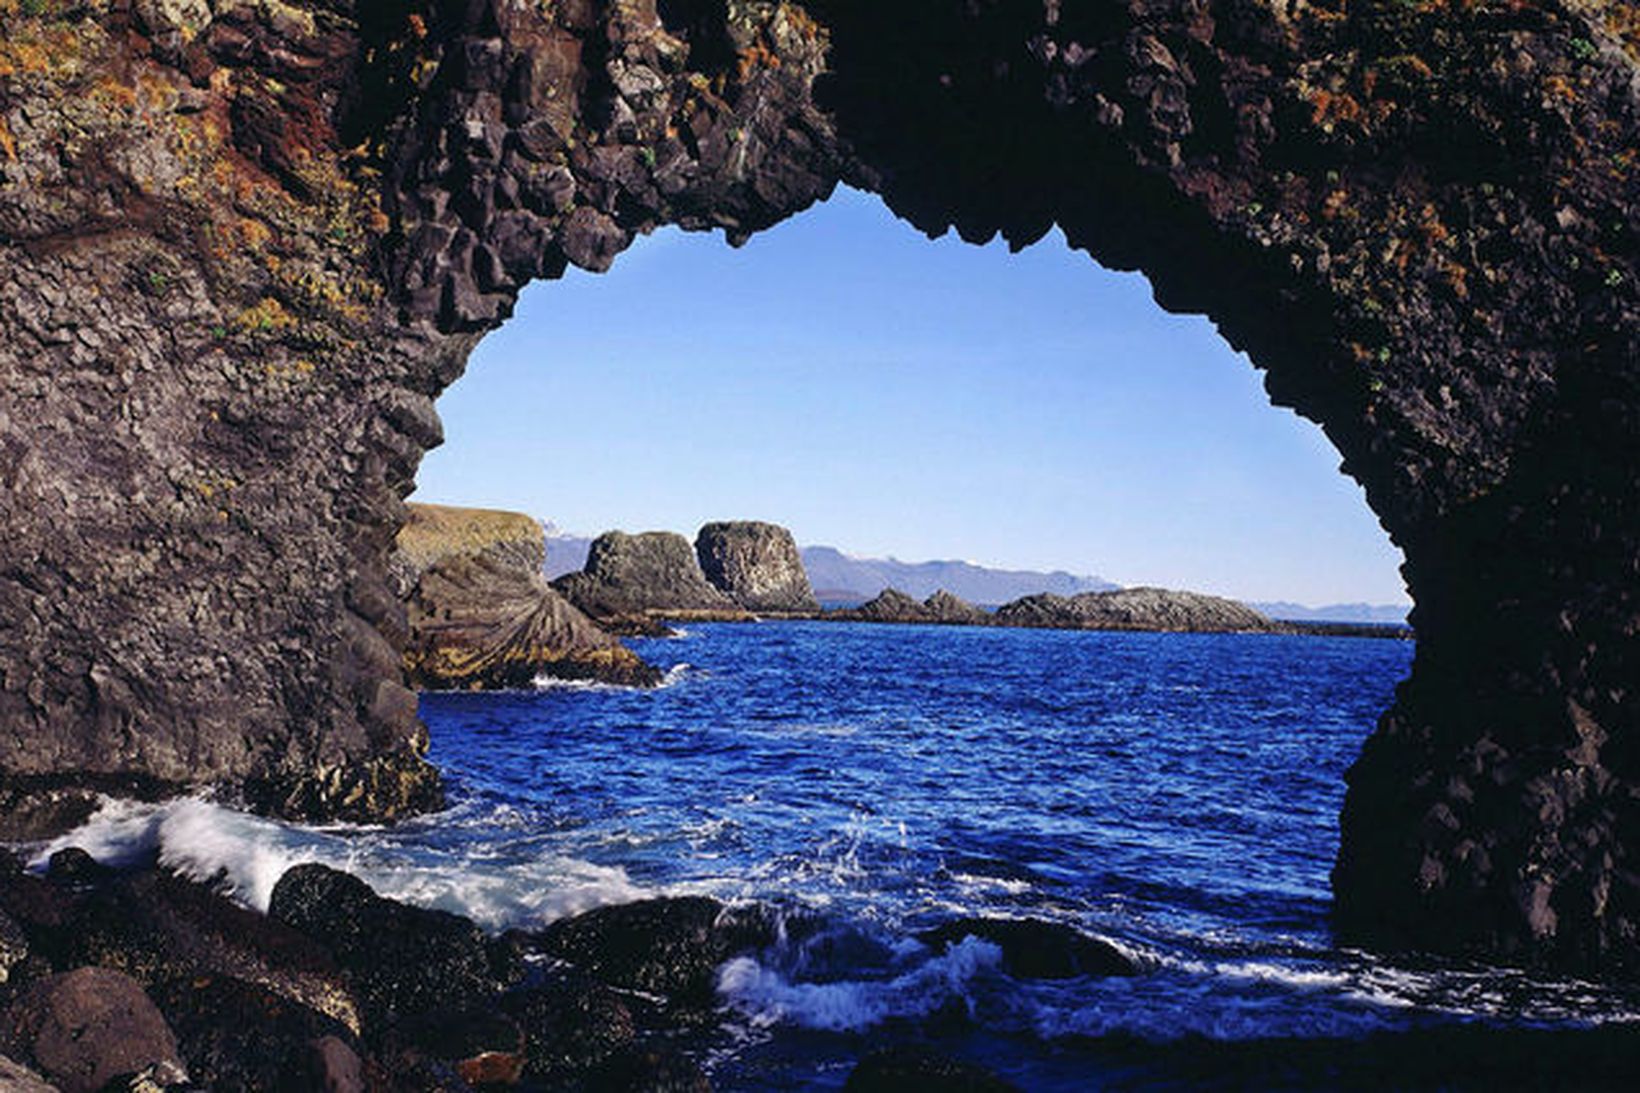 Maðurinn rann fram af klettum við Miðgjá á Arnarstapa.